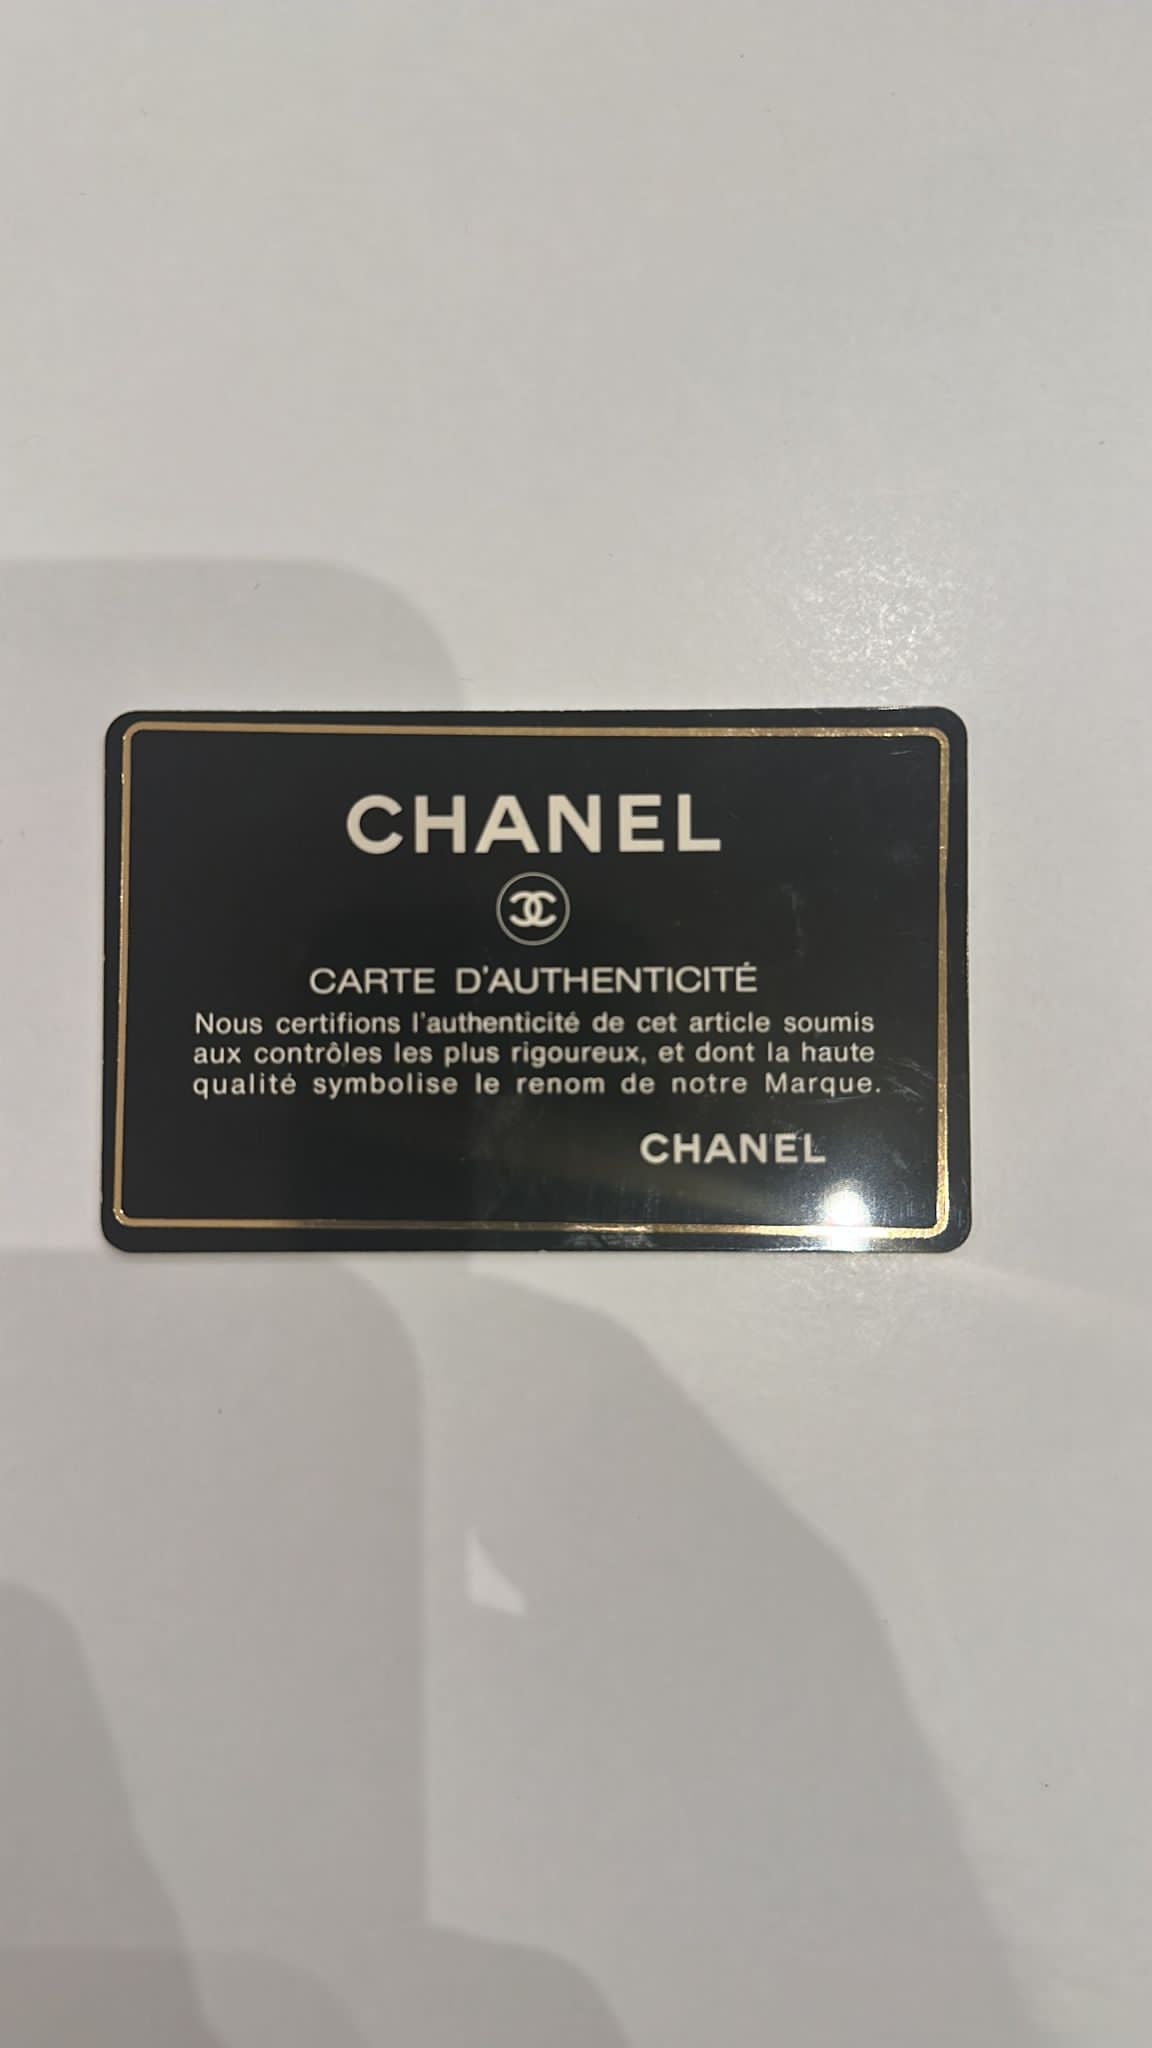 Chanel Diana vintage bag